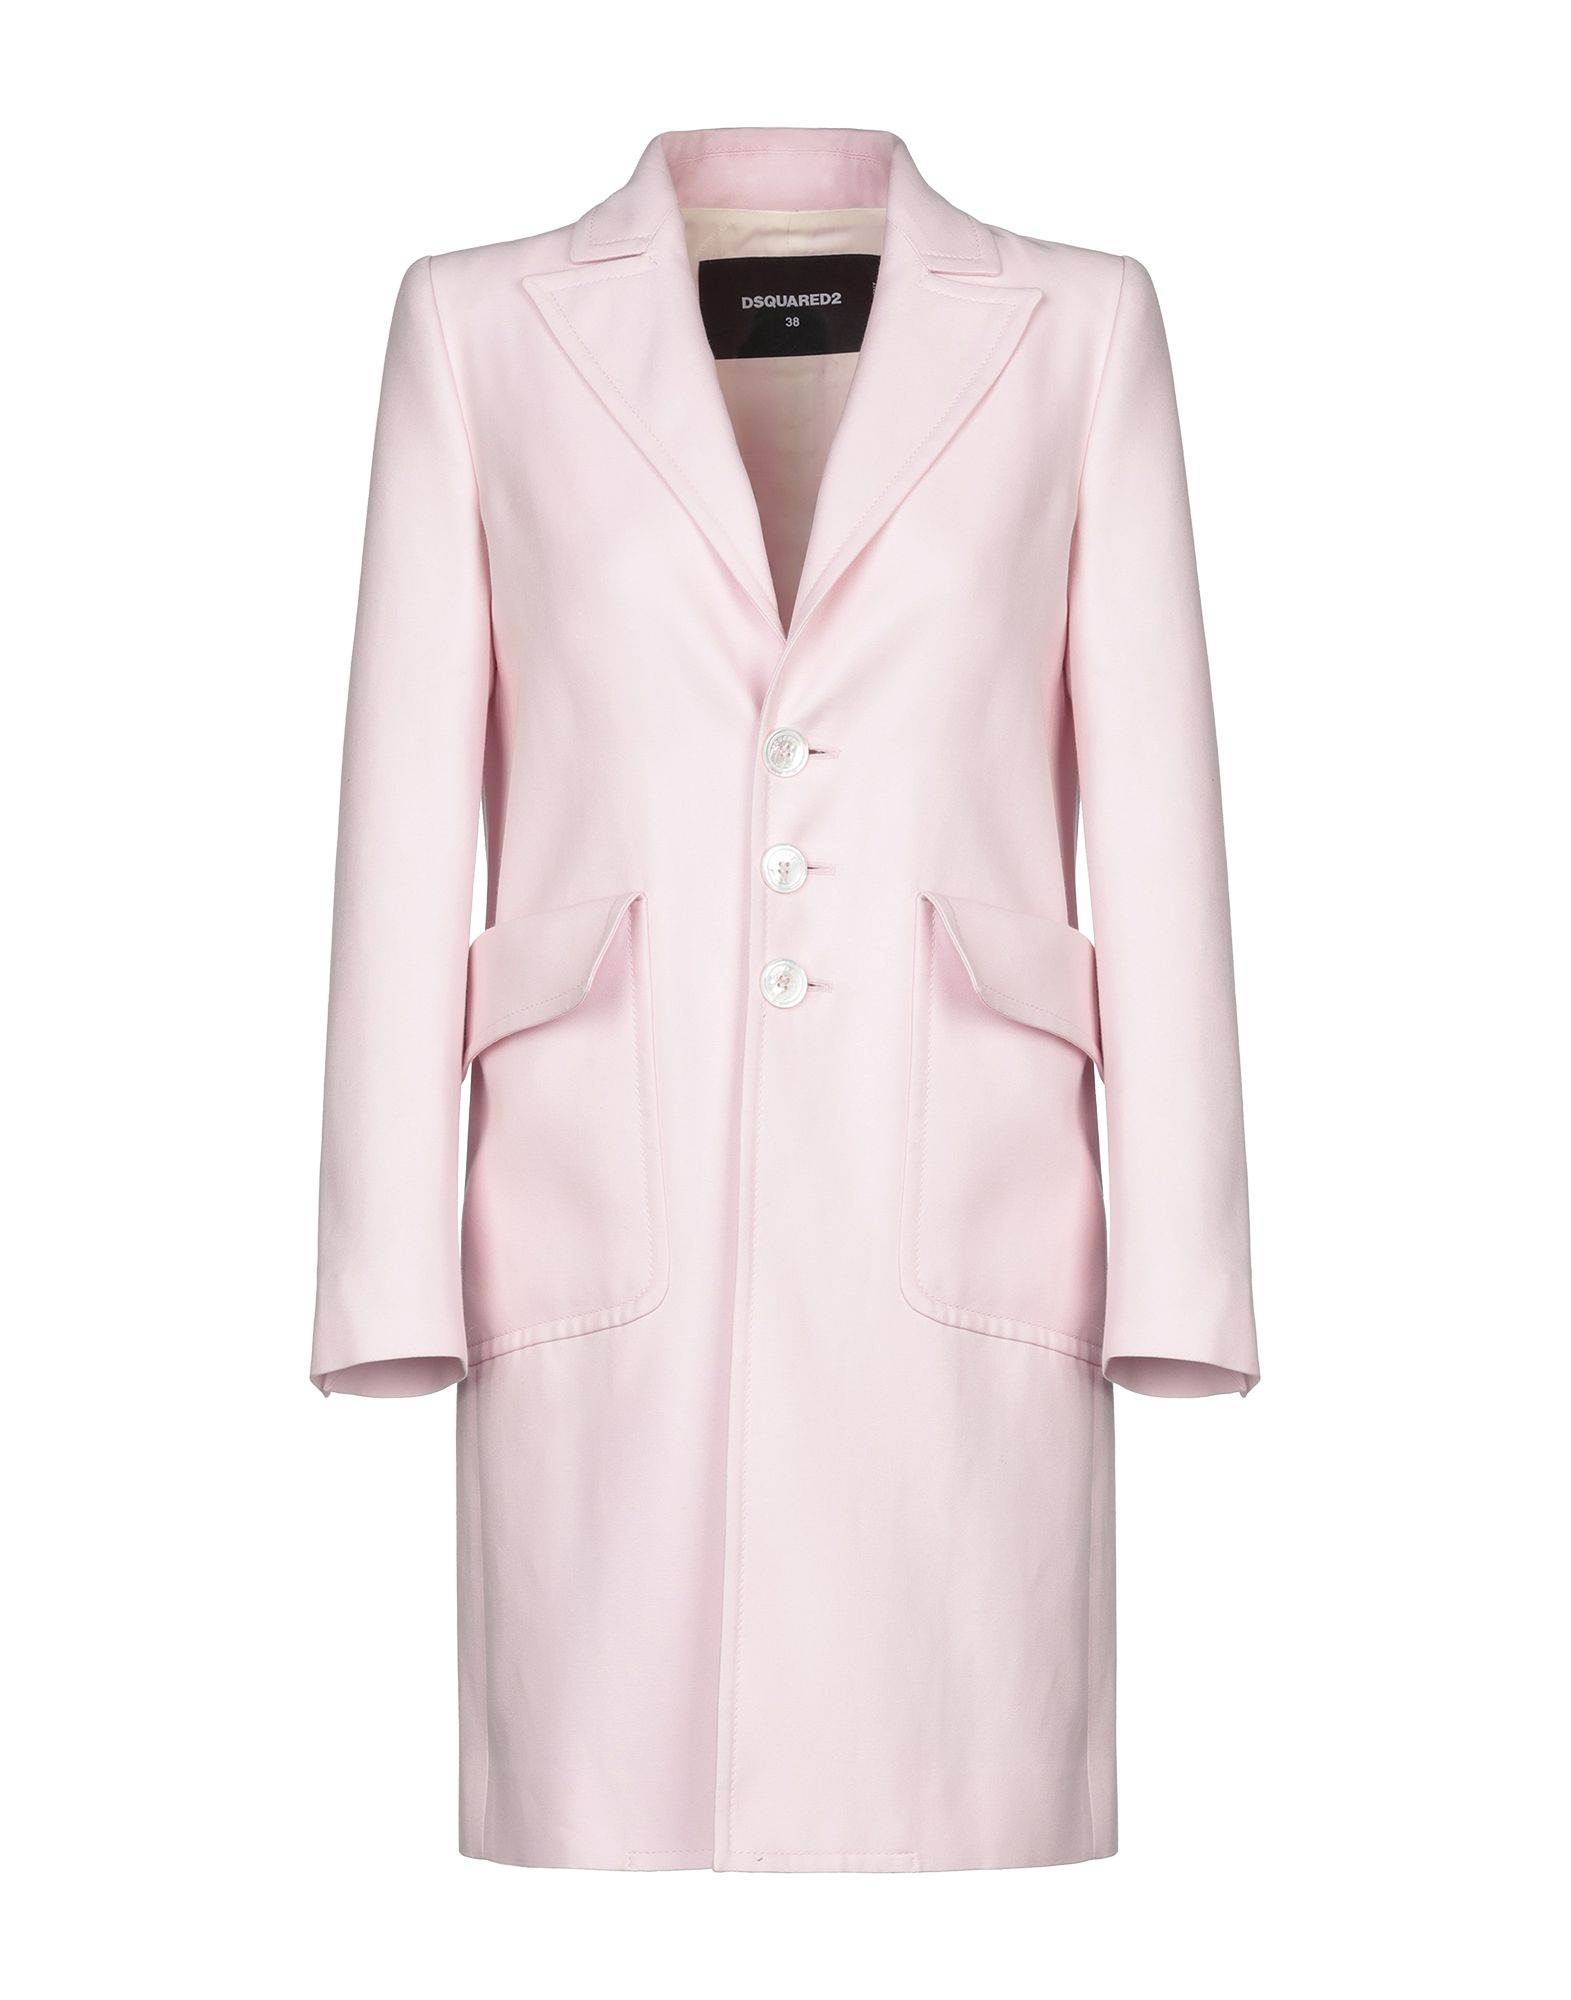 Купить легкое пальто. Атласное пальто. Атласное пальто женское. Пальто легкое женское розовое на одной пуговице.